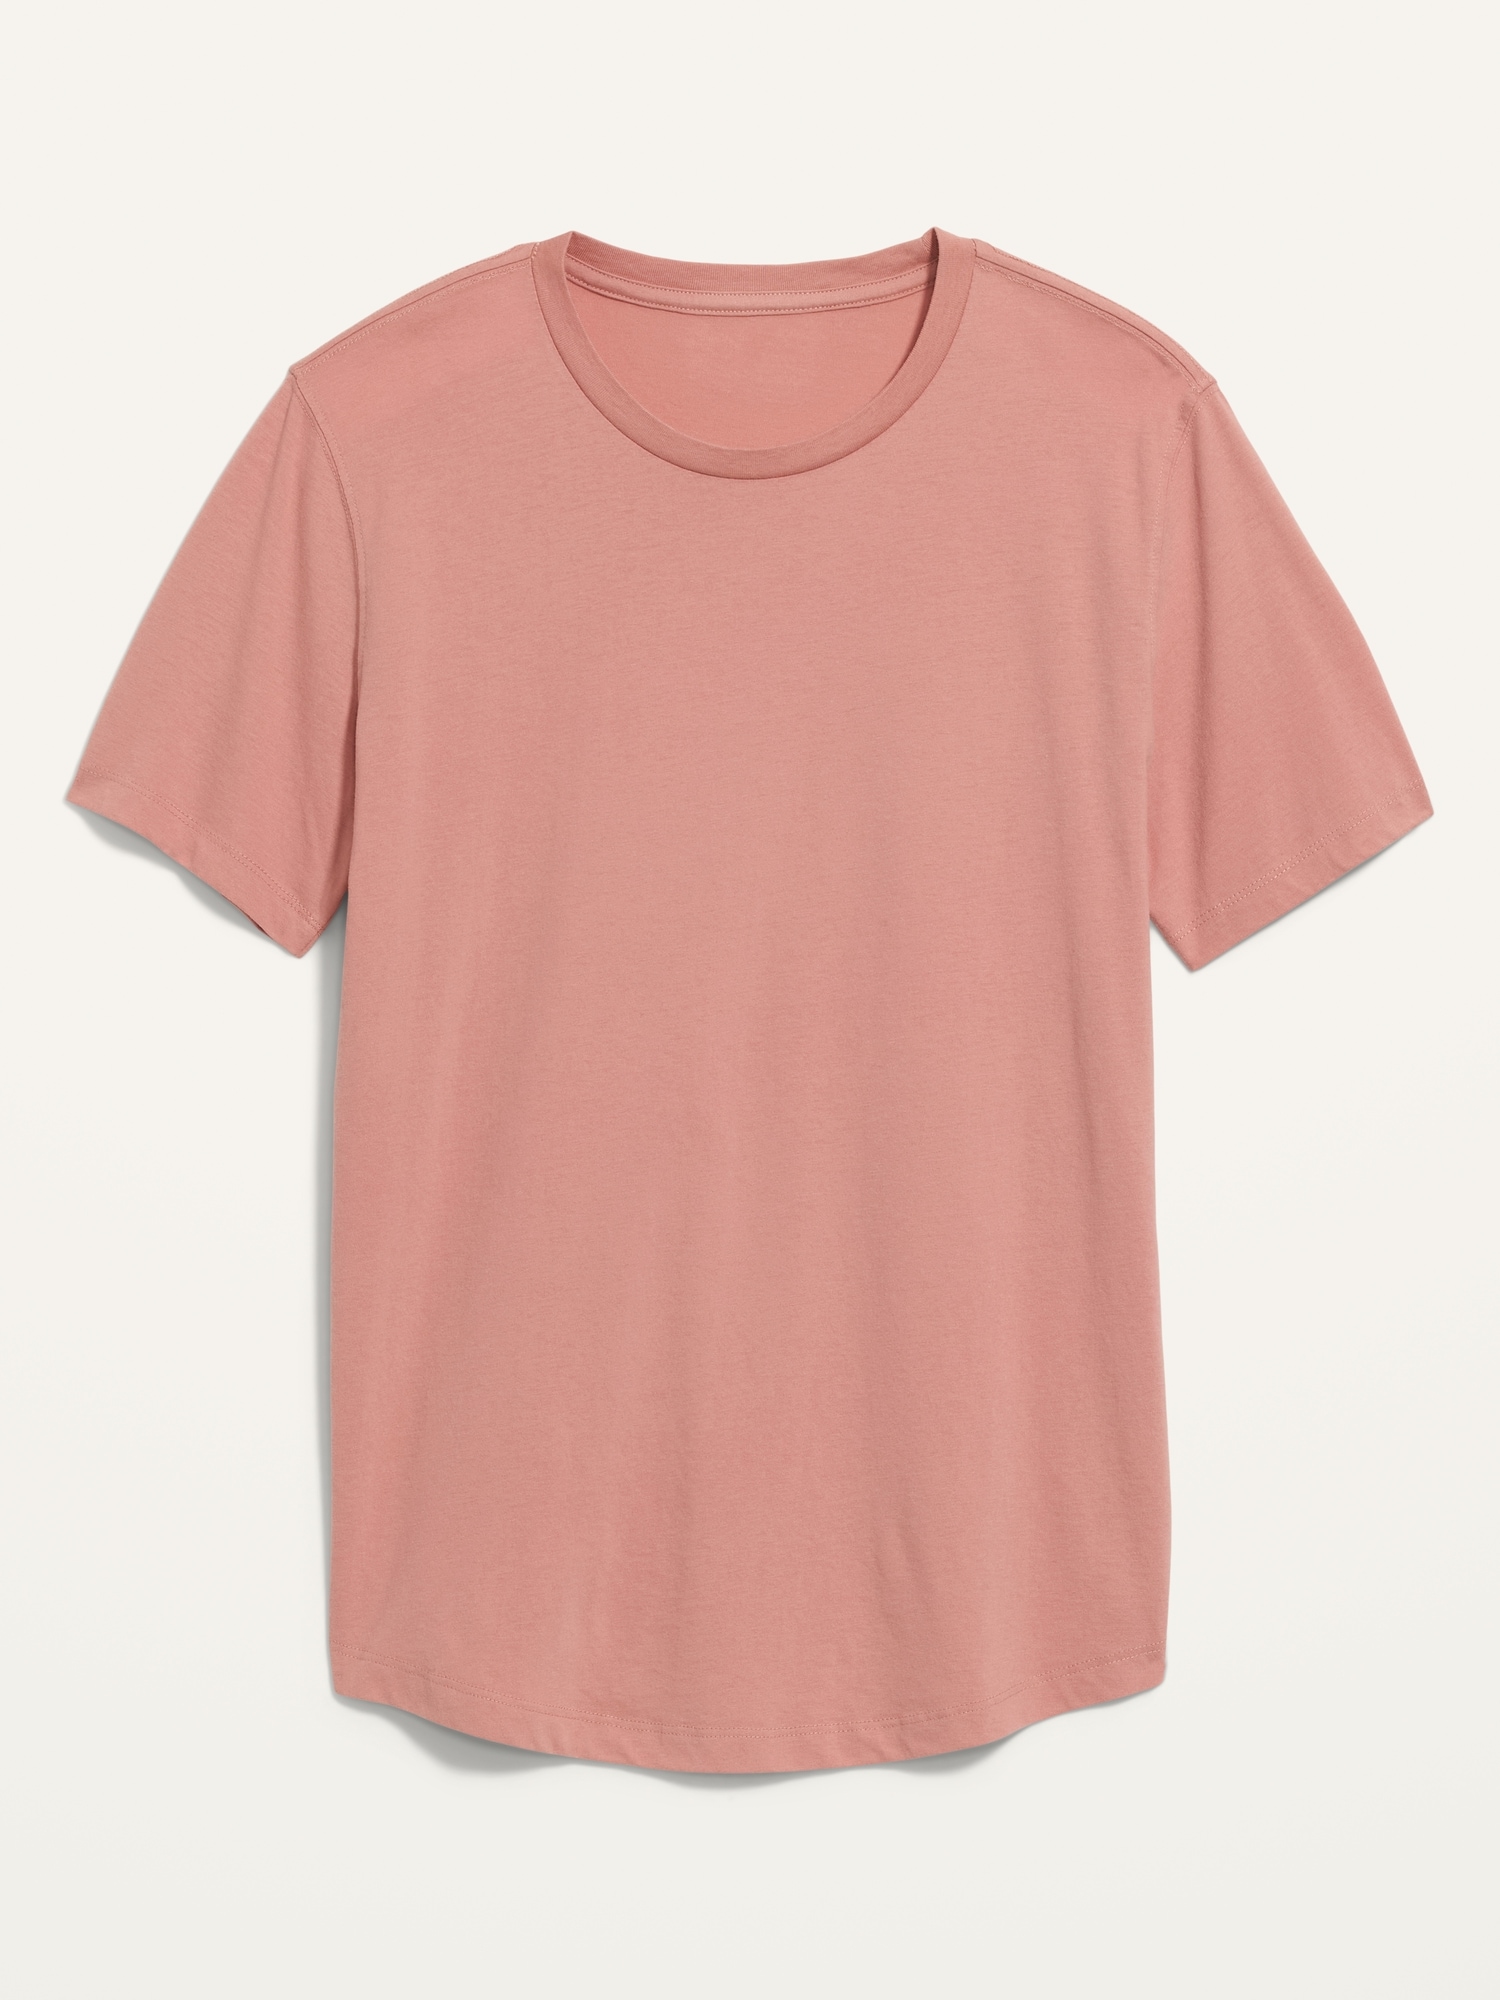 Old Navy Soft-Washed Curved-Hem T-Shirt for Men pink. 1